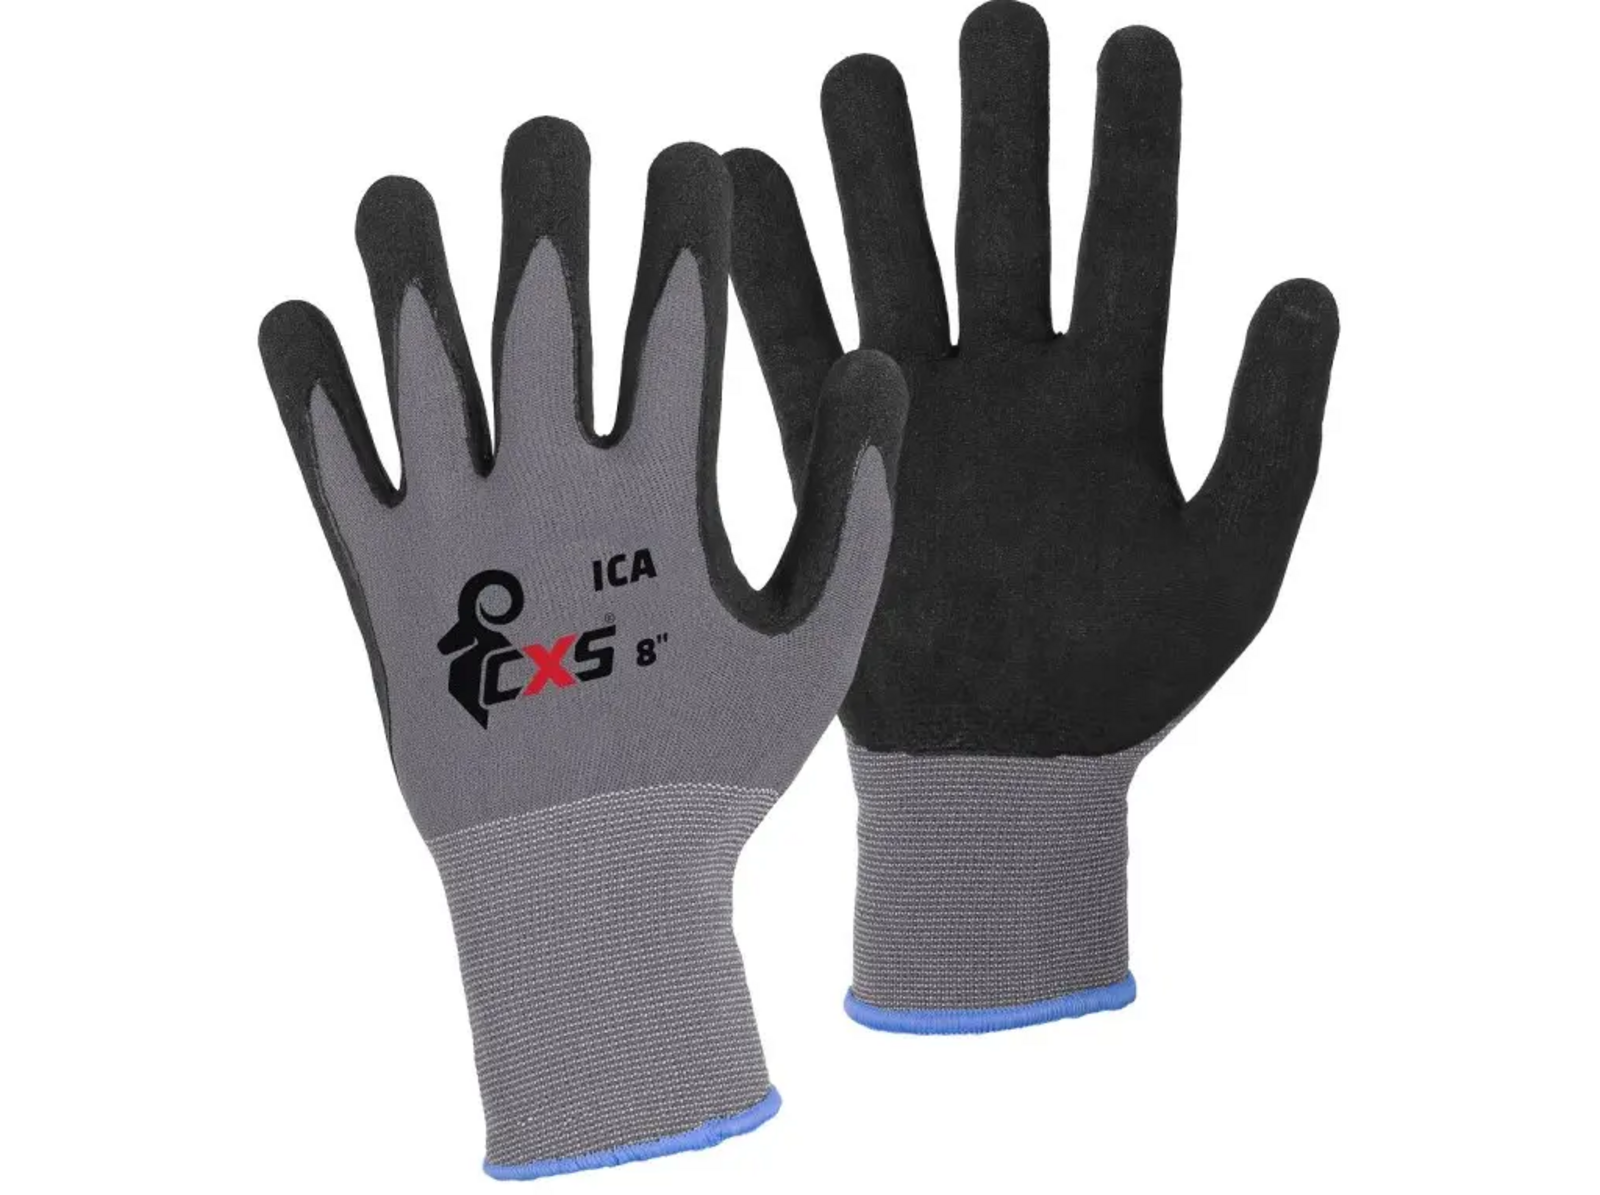 Povrstvené rukavice CXS Ica - veľkosť: 11/XXL, farba: sivá/čierna